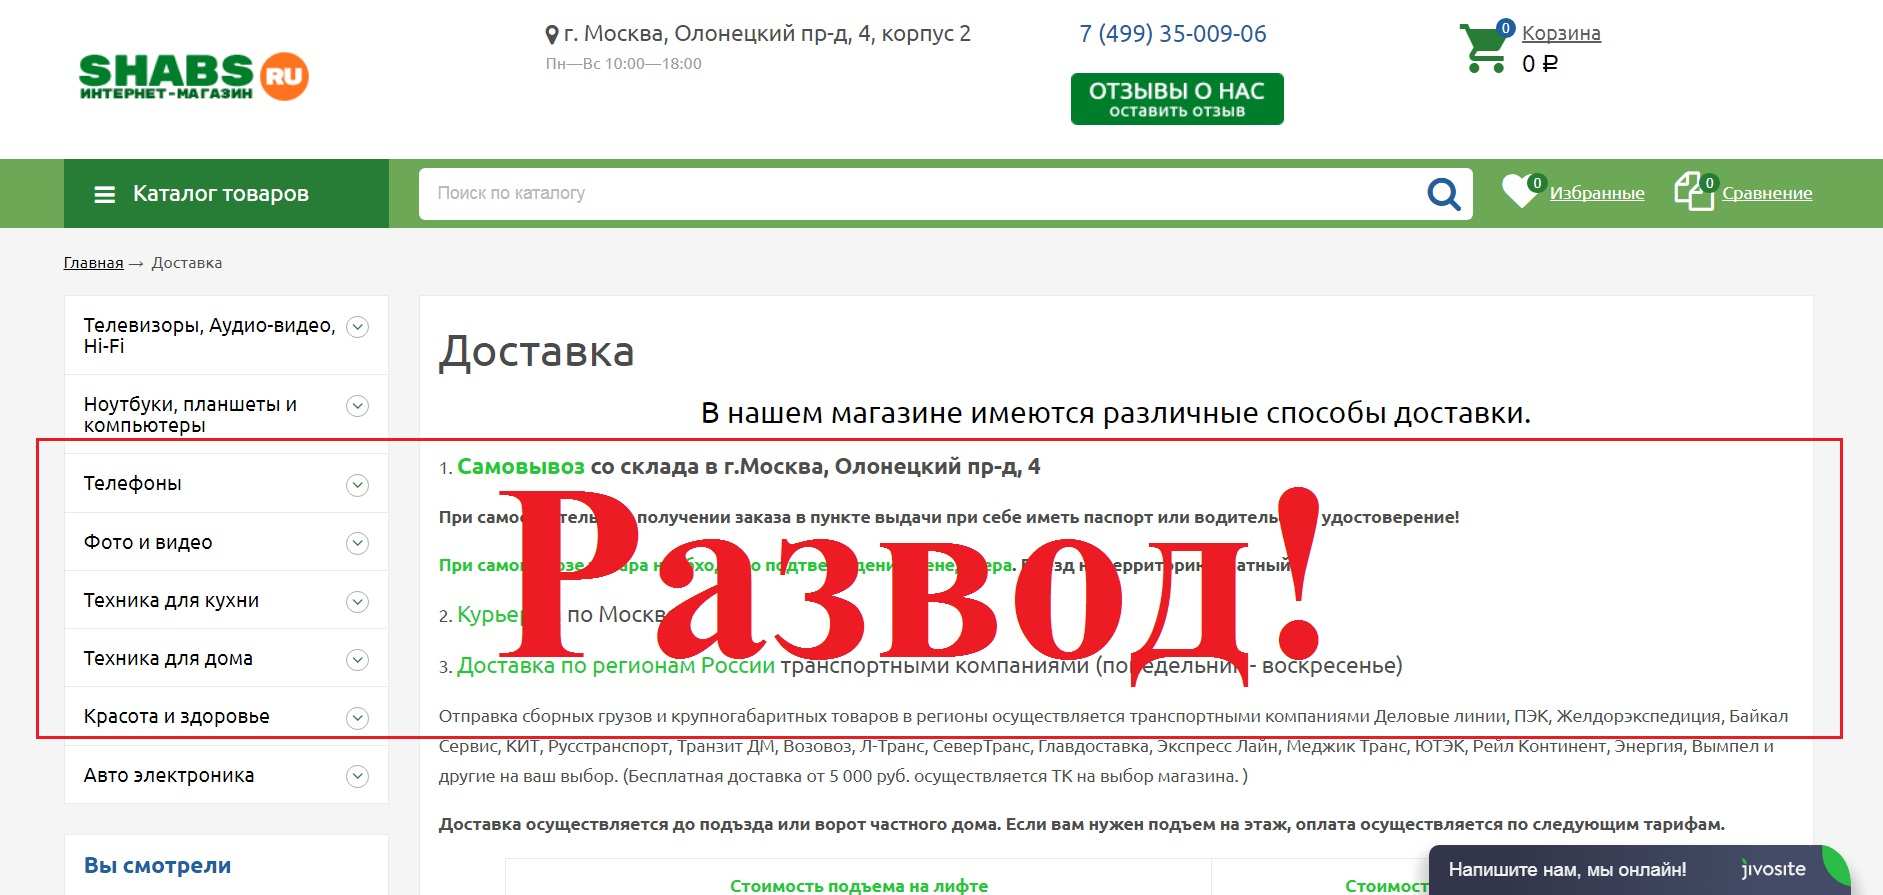 Shabs.ru – отзывы о магазине